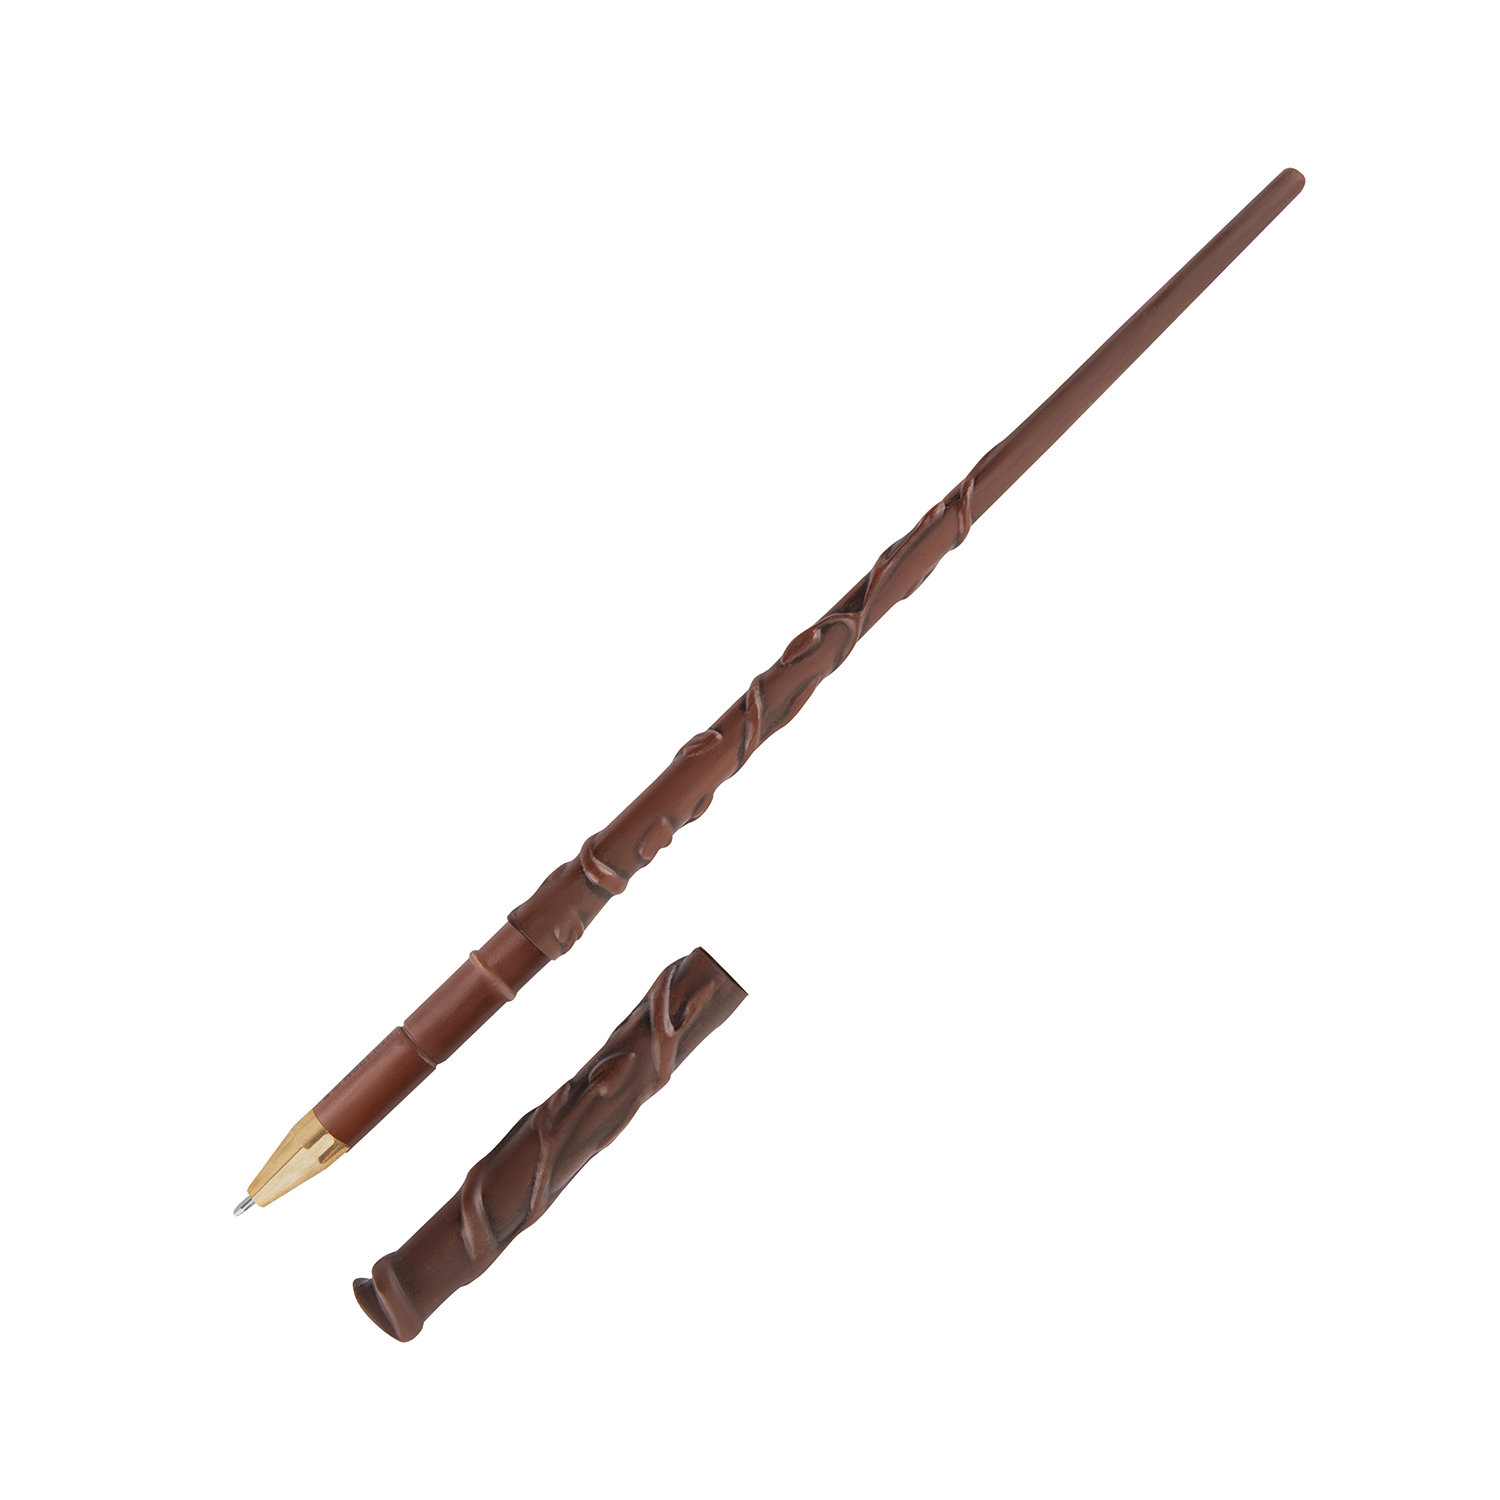 Ручка Harry Potter в виде палочки Гермионы Грейнджер 25 см с подставкой и закладкой - фото 3